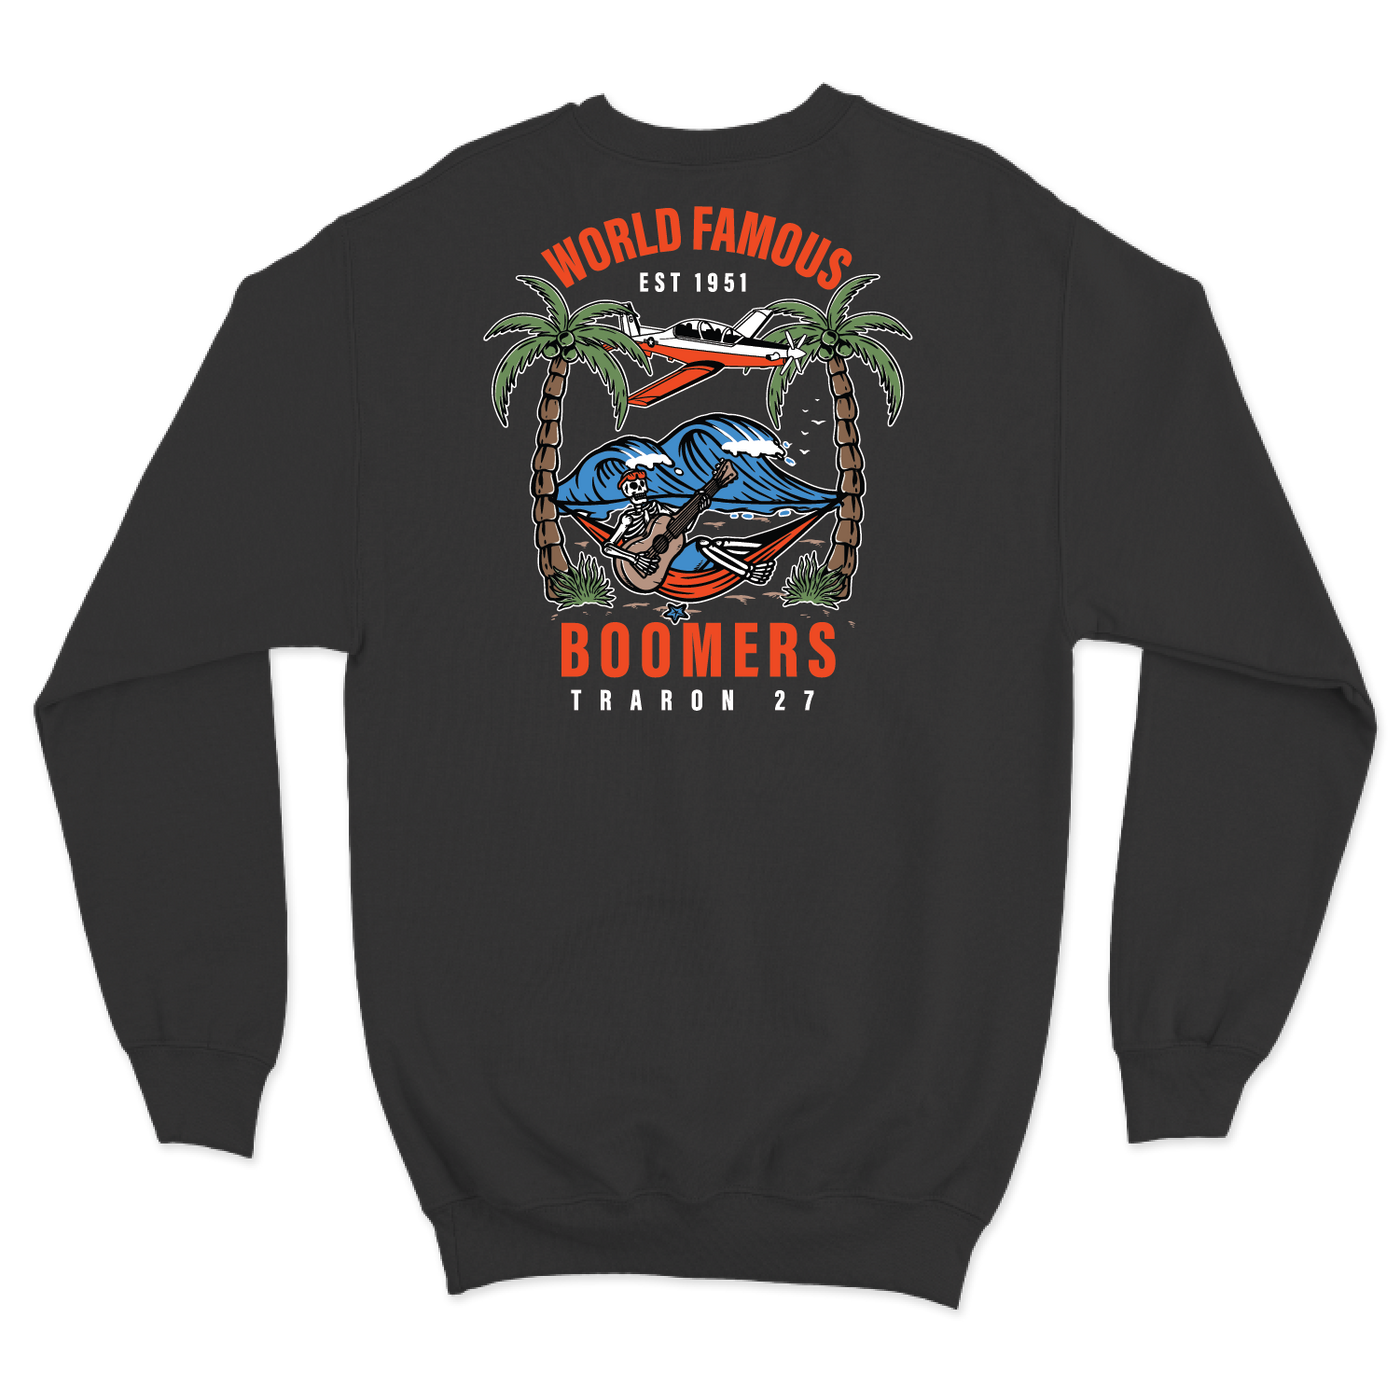 VT-27 "Boomers" Crewneck Sweatshirt V2